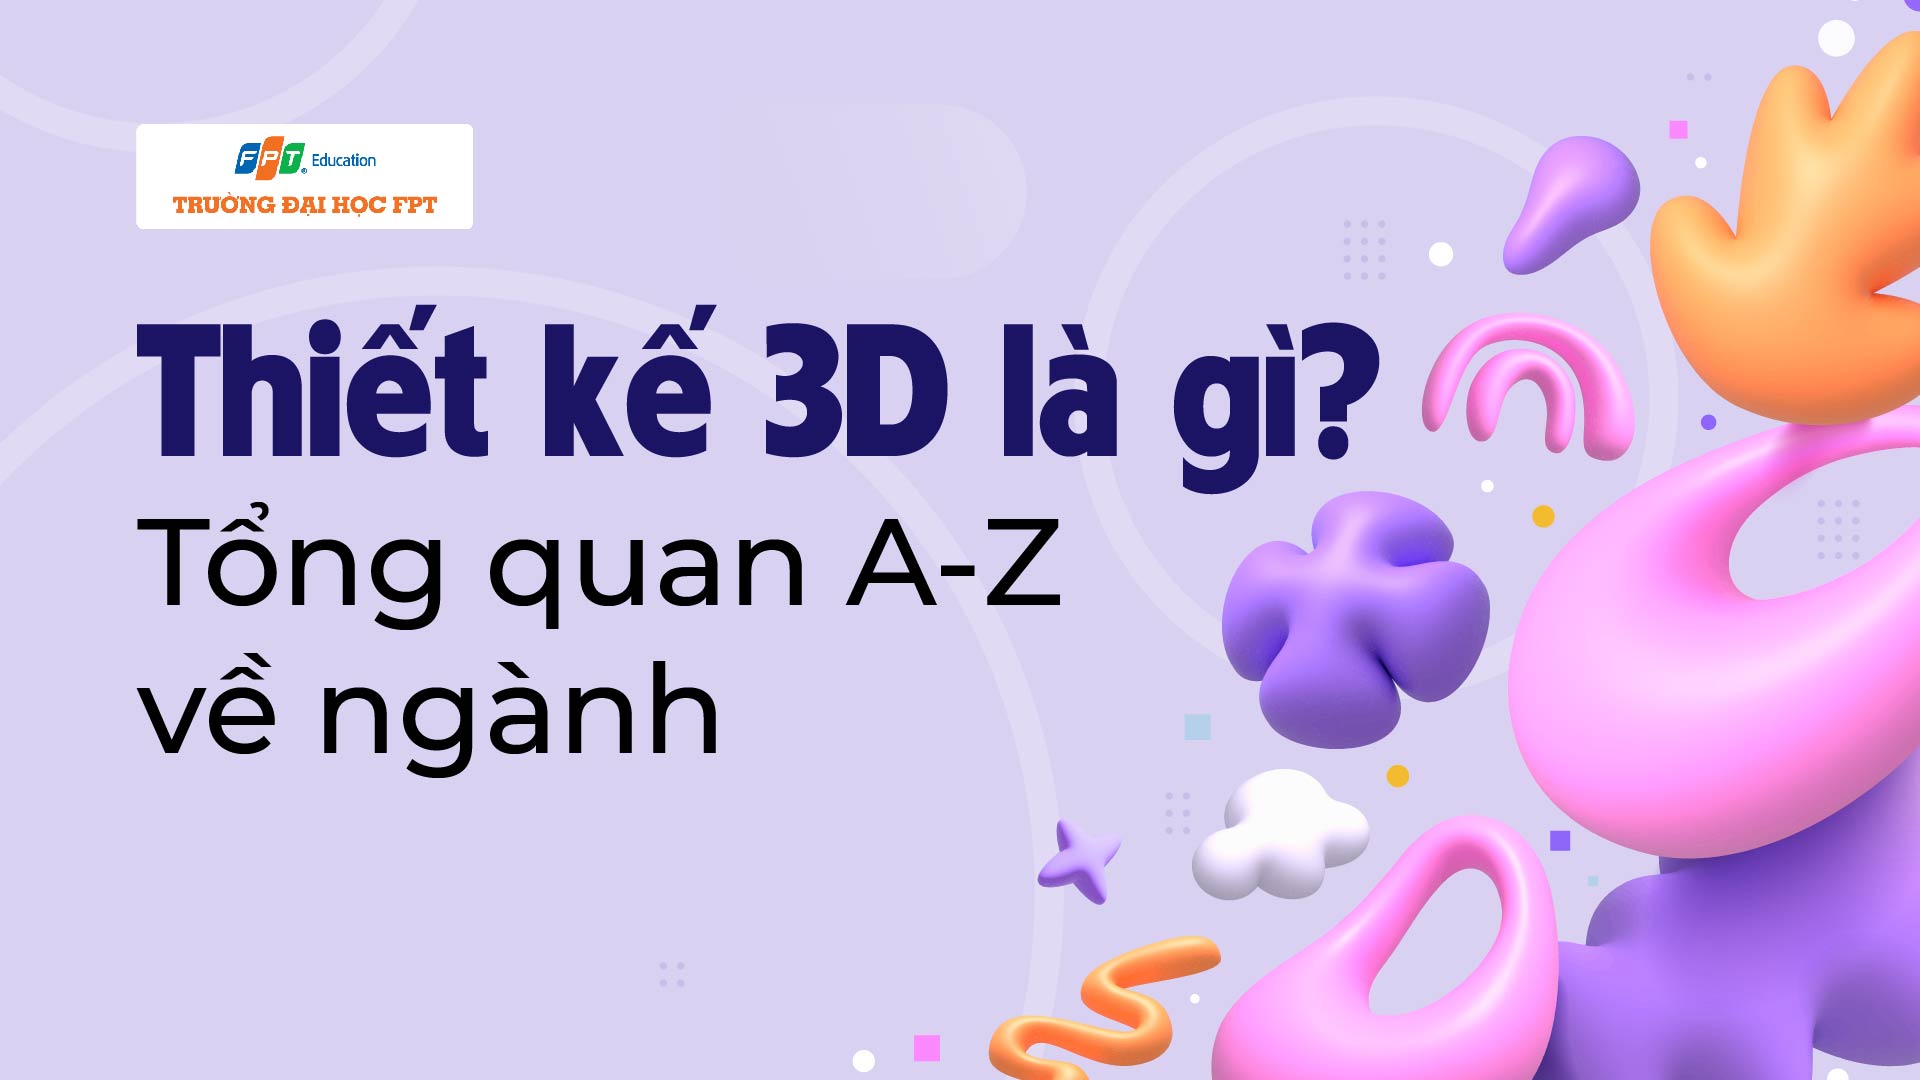 Thiết kế 3D là gì? Tổng quan A-Z về ngành